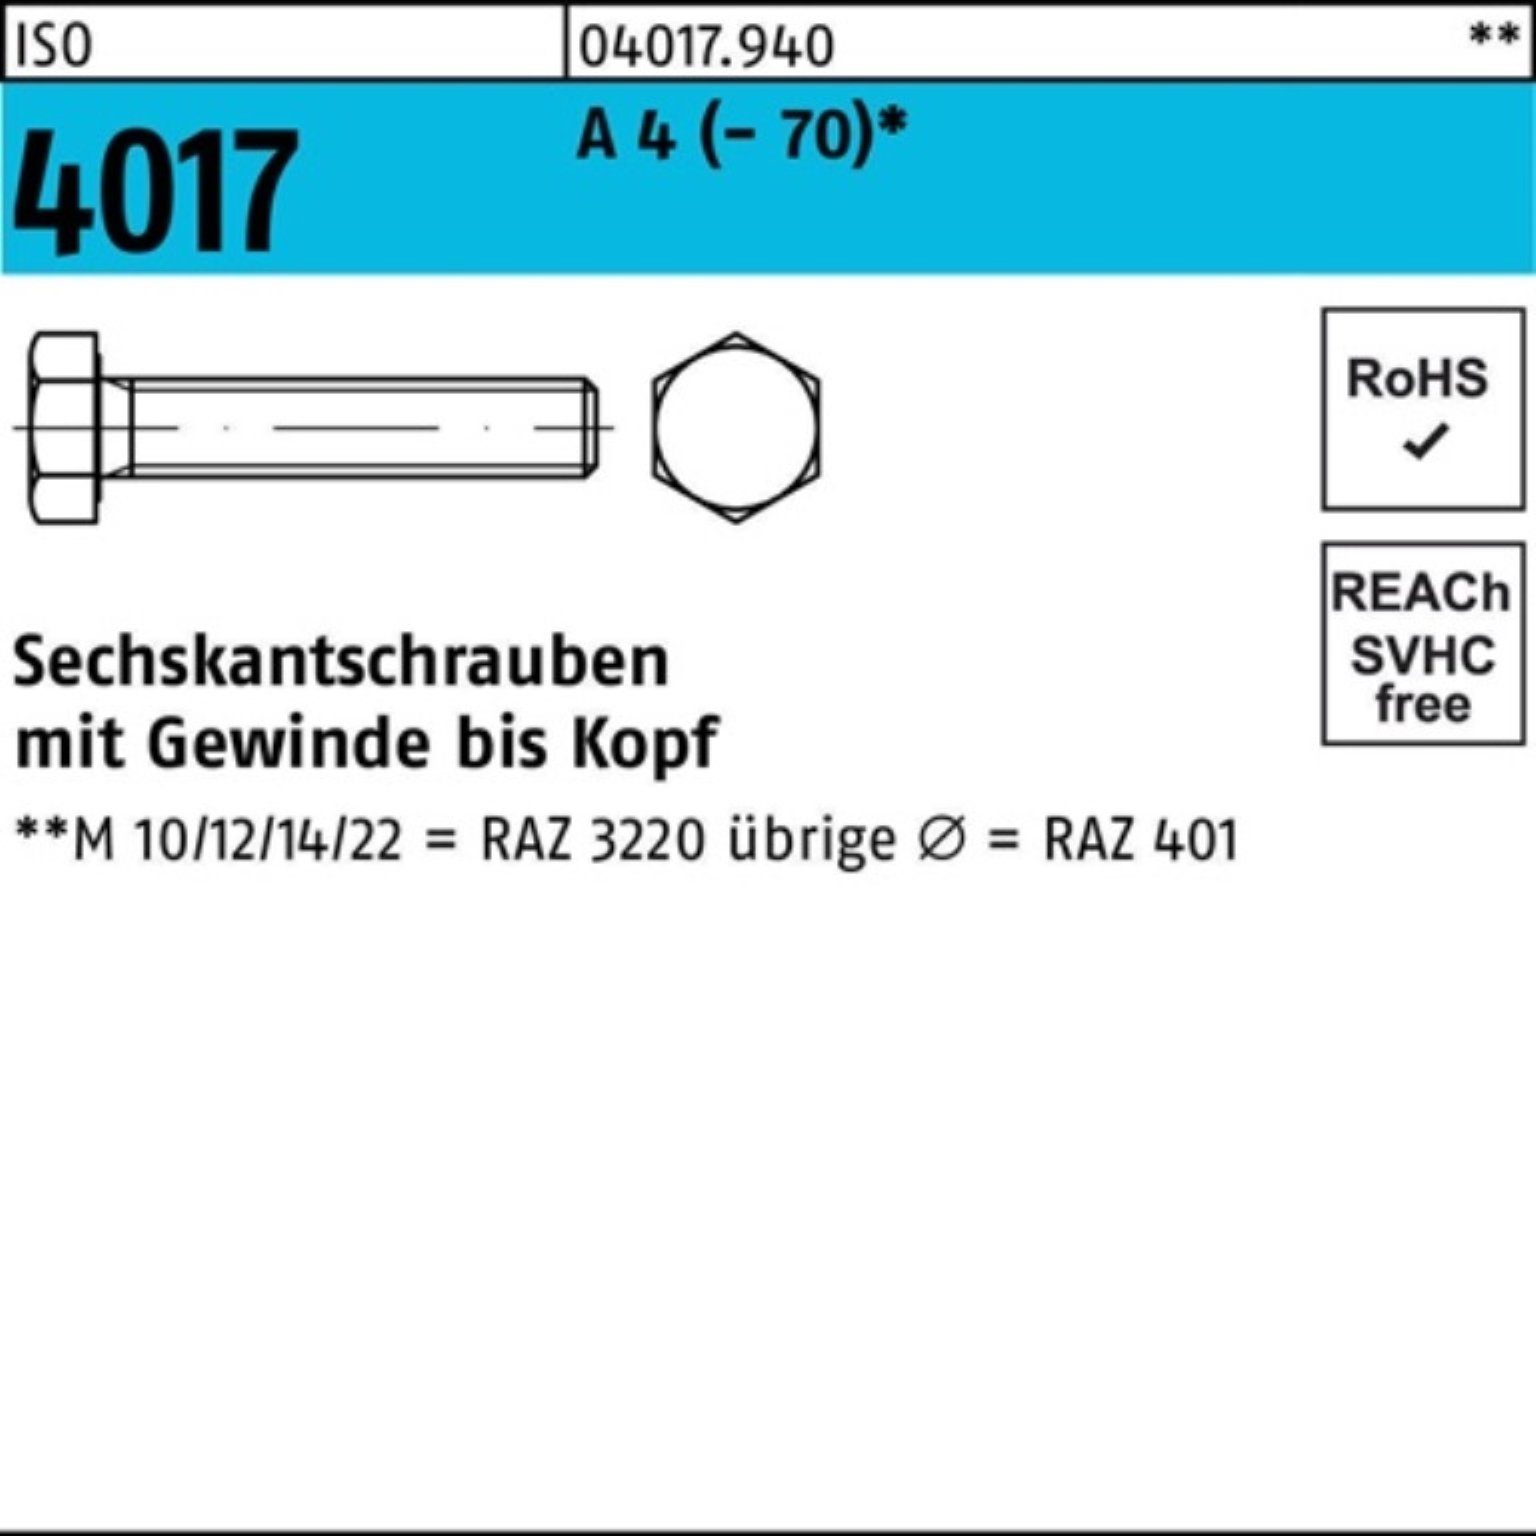 Bufab Sechskantschraube 100er Pack Sechskantschraube ISO 4017 VG M8x 170 A 4 (70) 1 Stück I